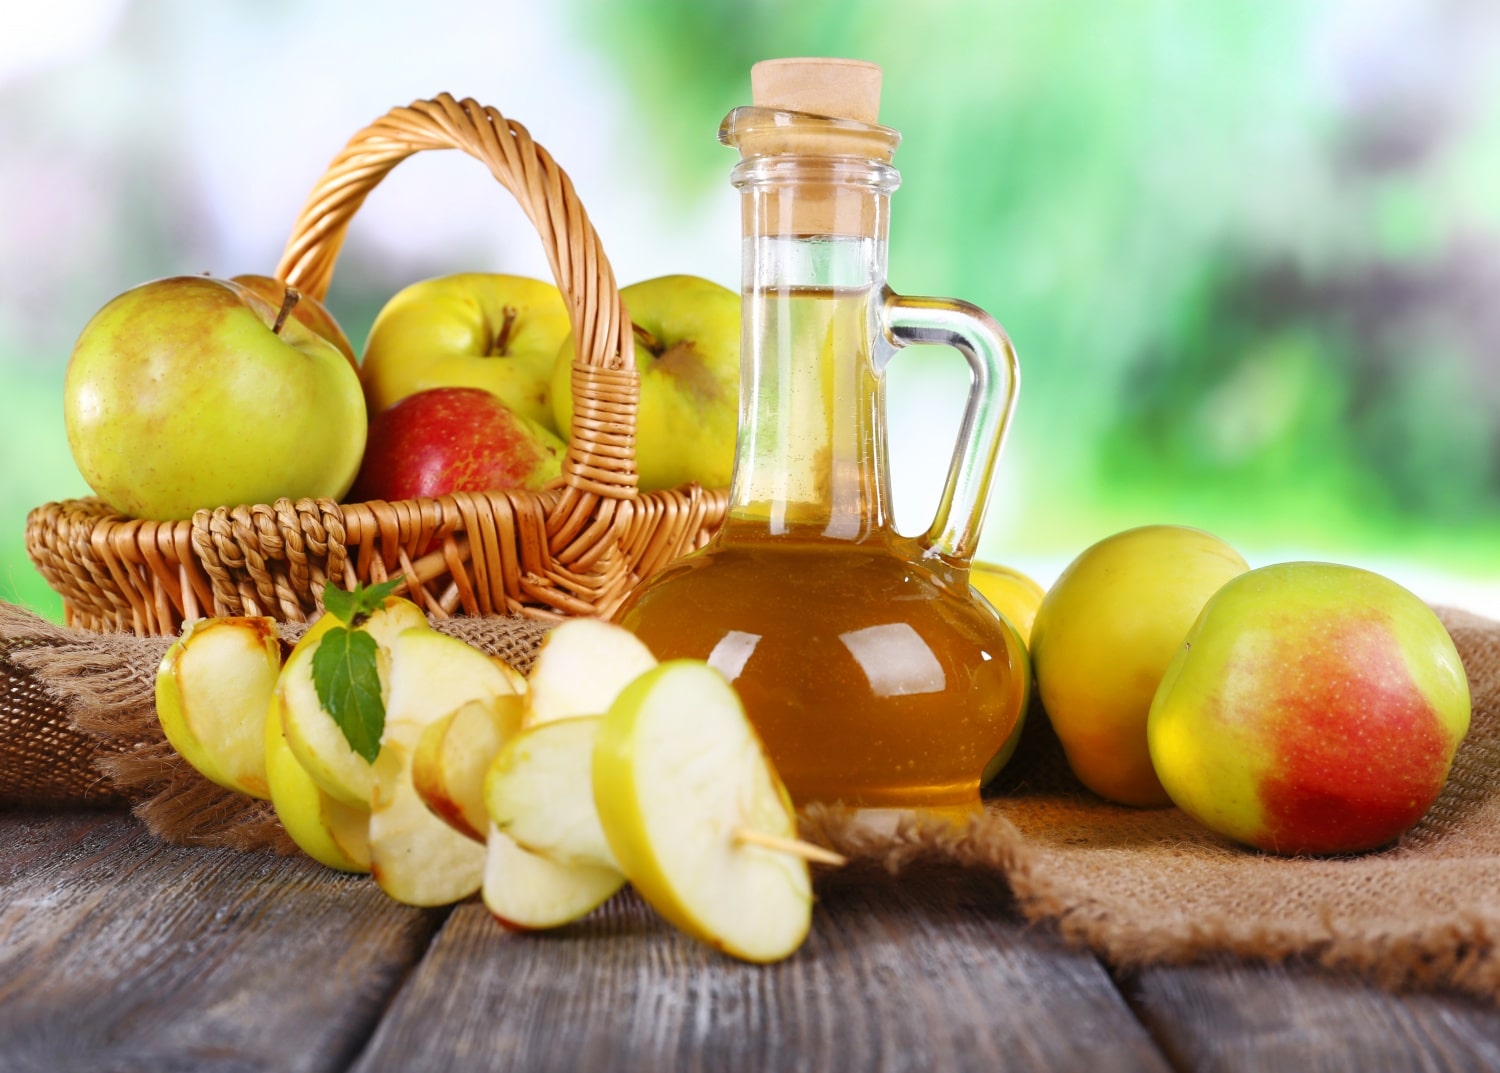 Fogyás, frissesség, egészség: az almaecet 7 csodálatos hatása a szervezetedre